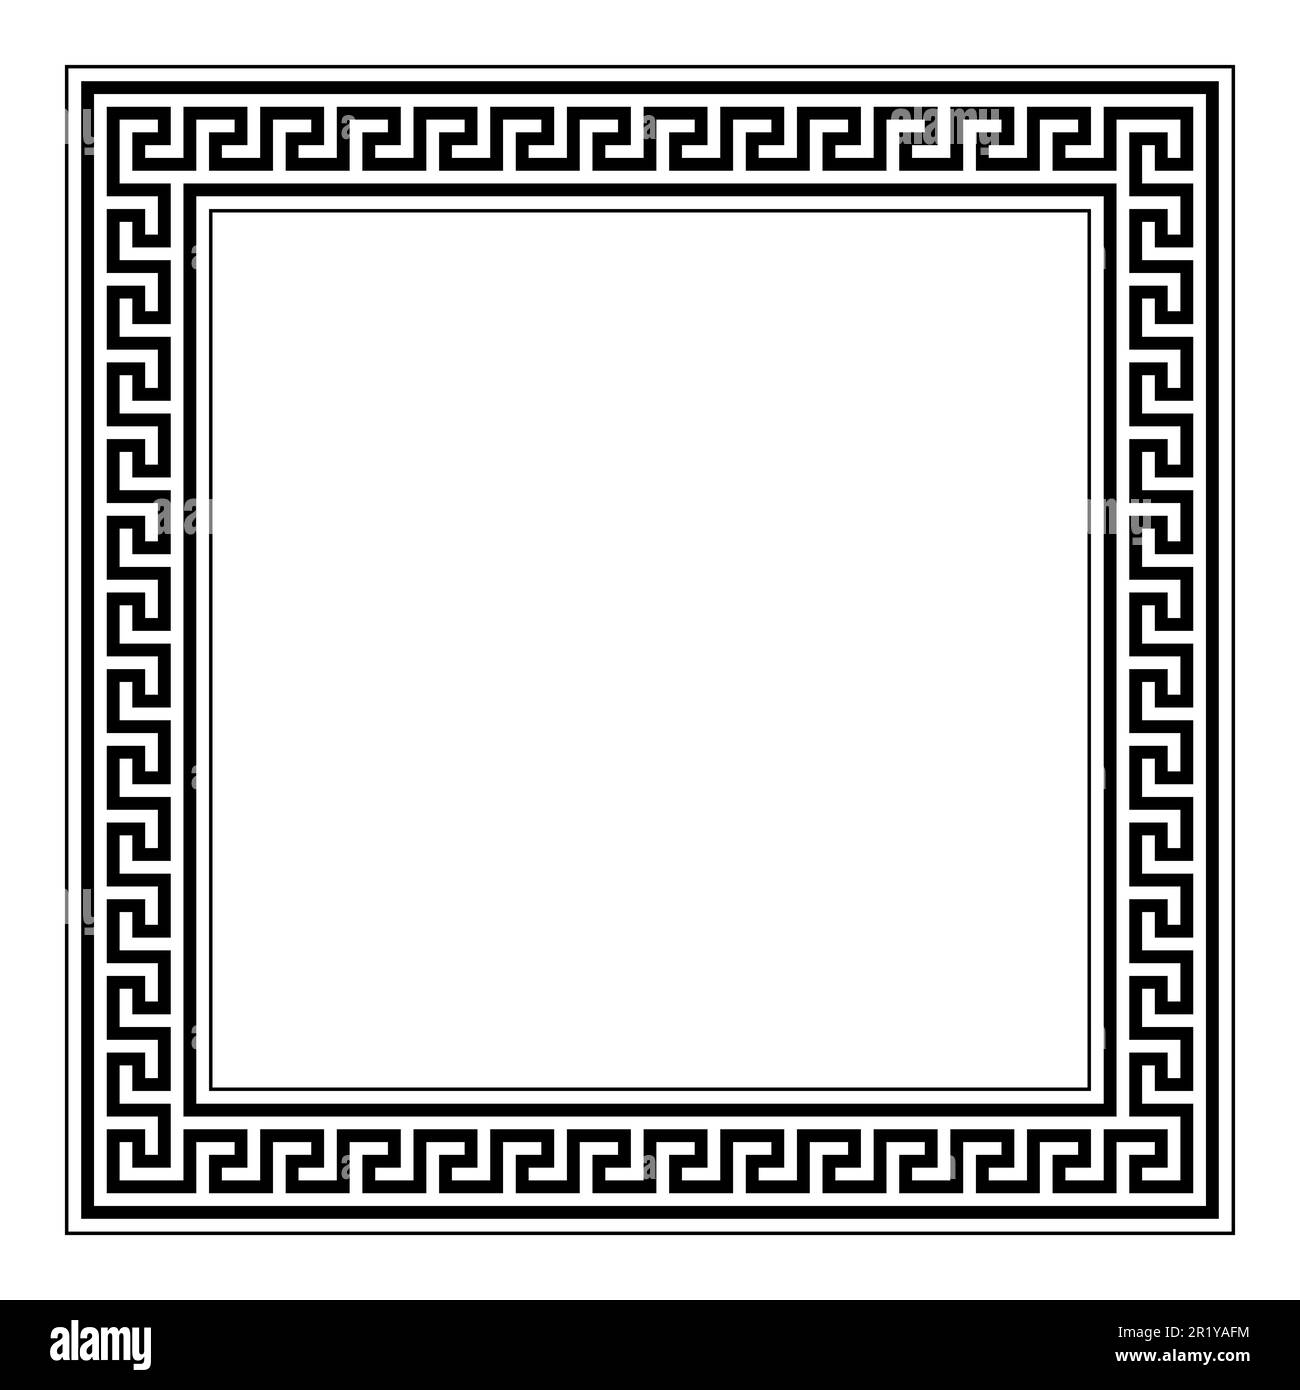 Motif clé grecque, motif méandre dentelé, cadre carré et bordure décorative. Fait de lignes, en forme de motif répété, encadrées par des lignes. Banque D'Images